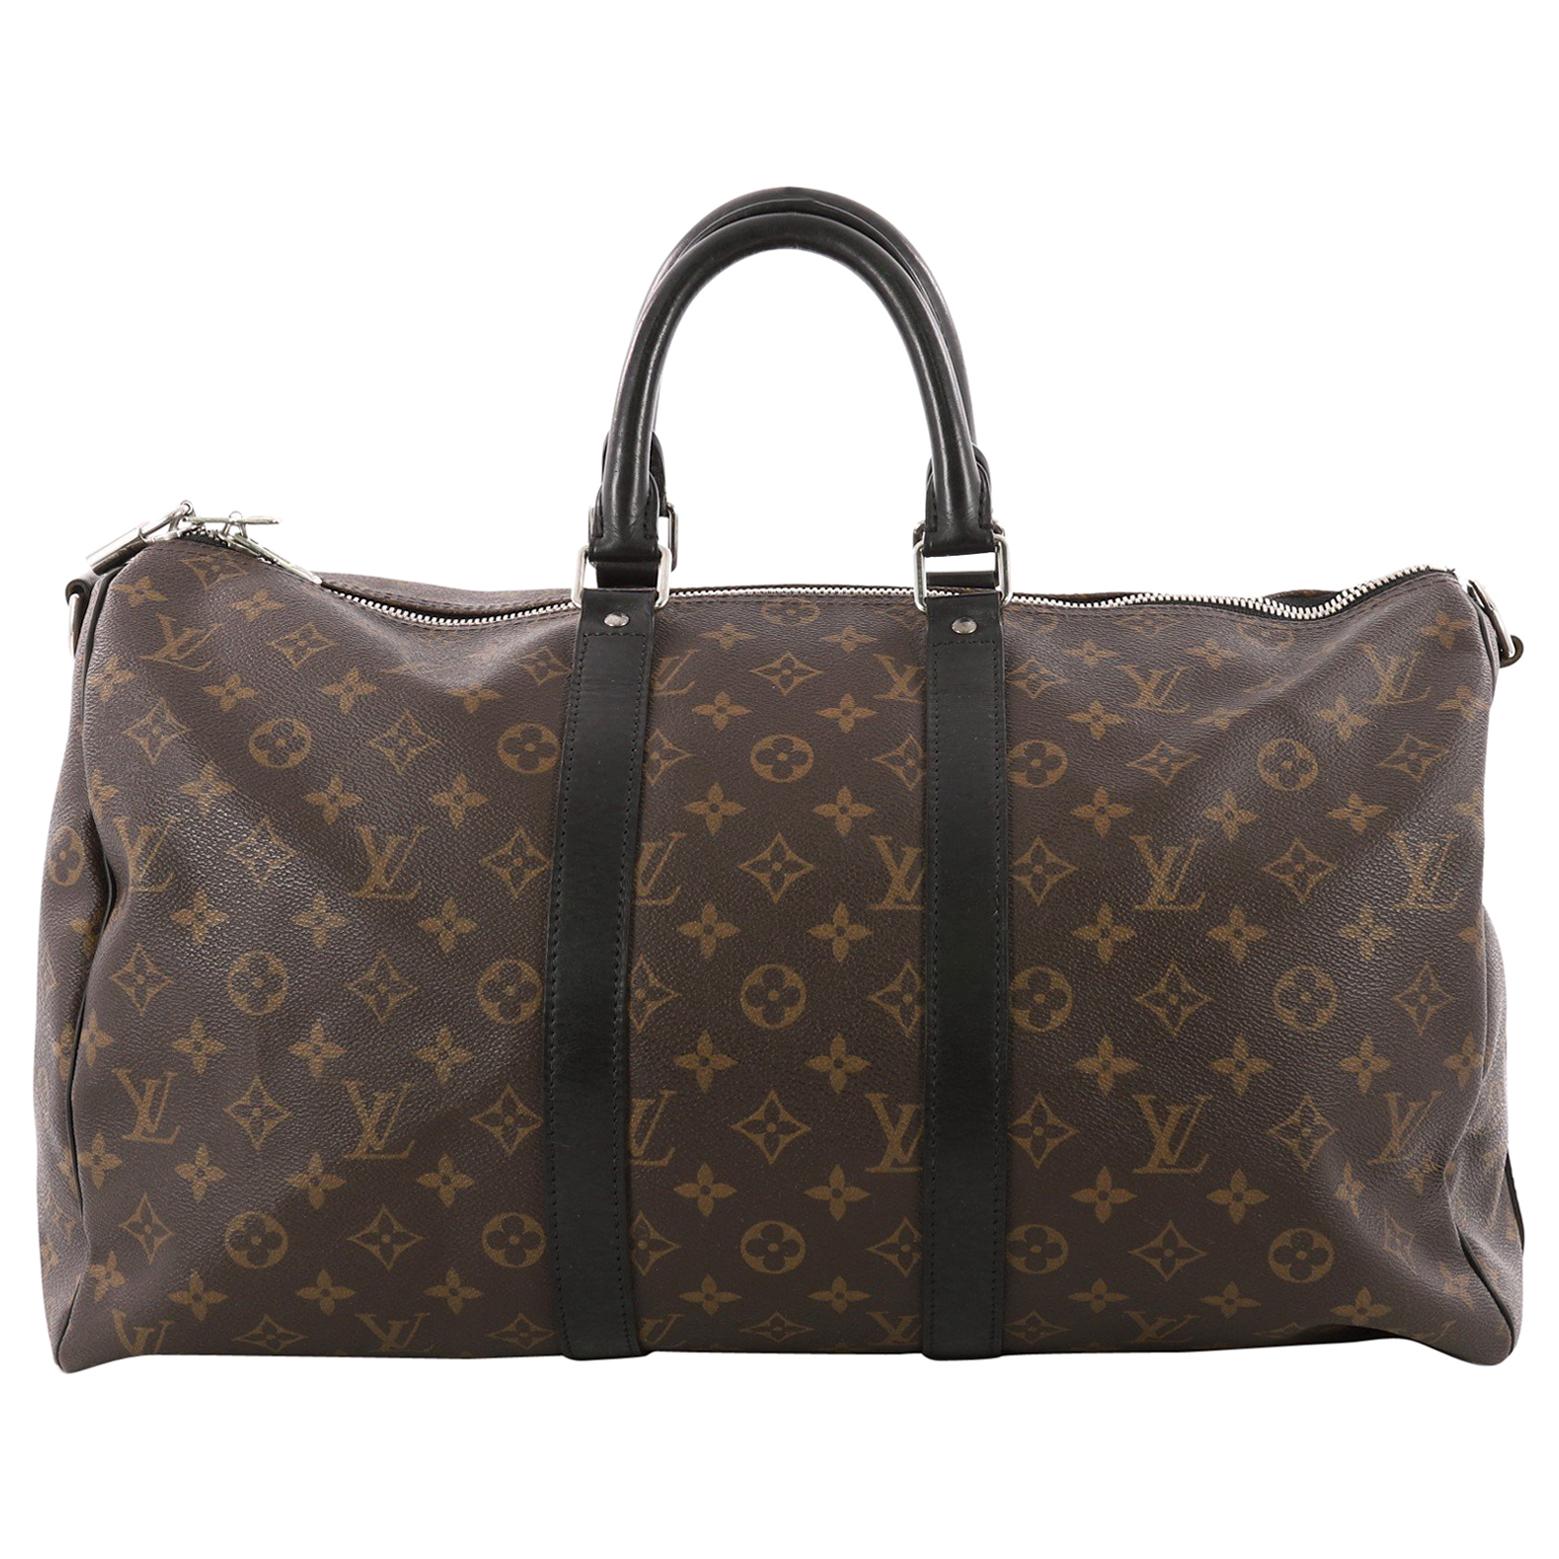 Louis Vuitton Keepall Bandouliere Bag Macassar Monogram Canvas 45